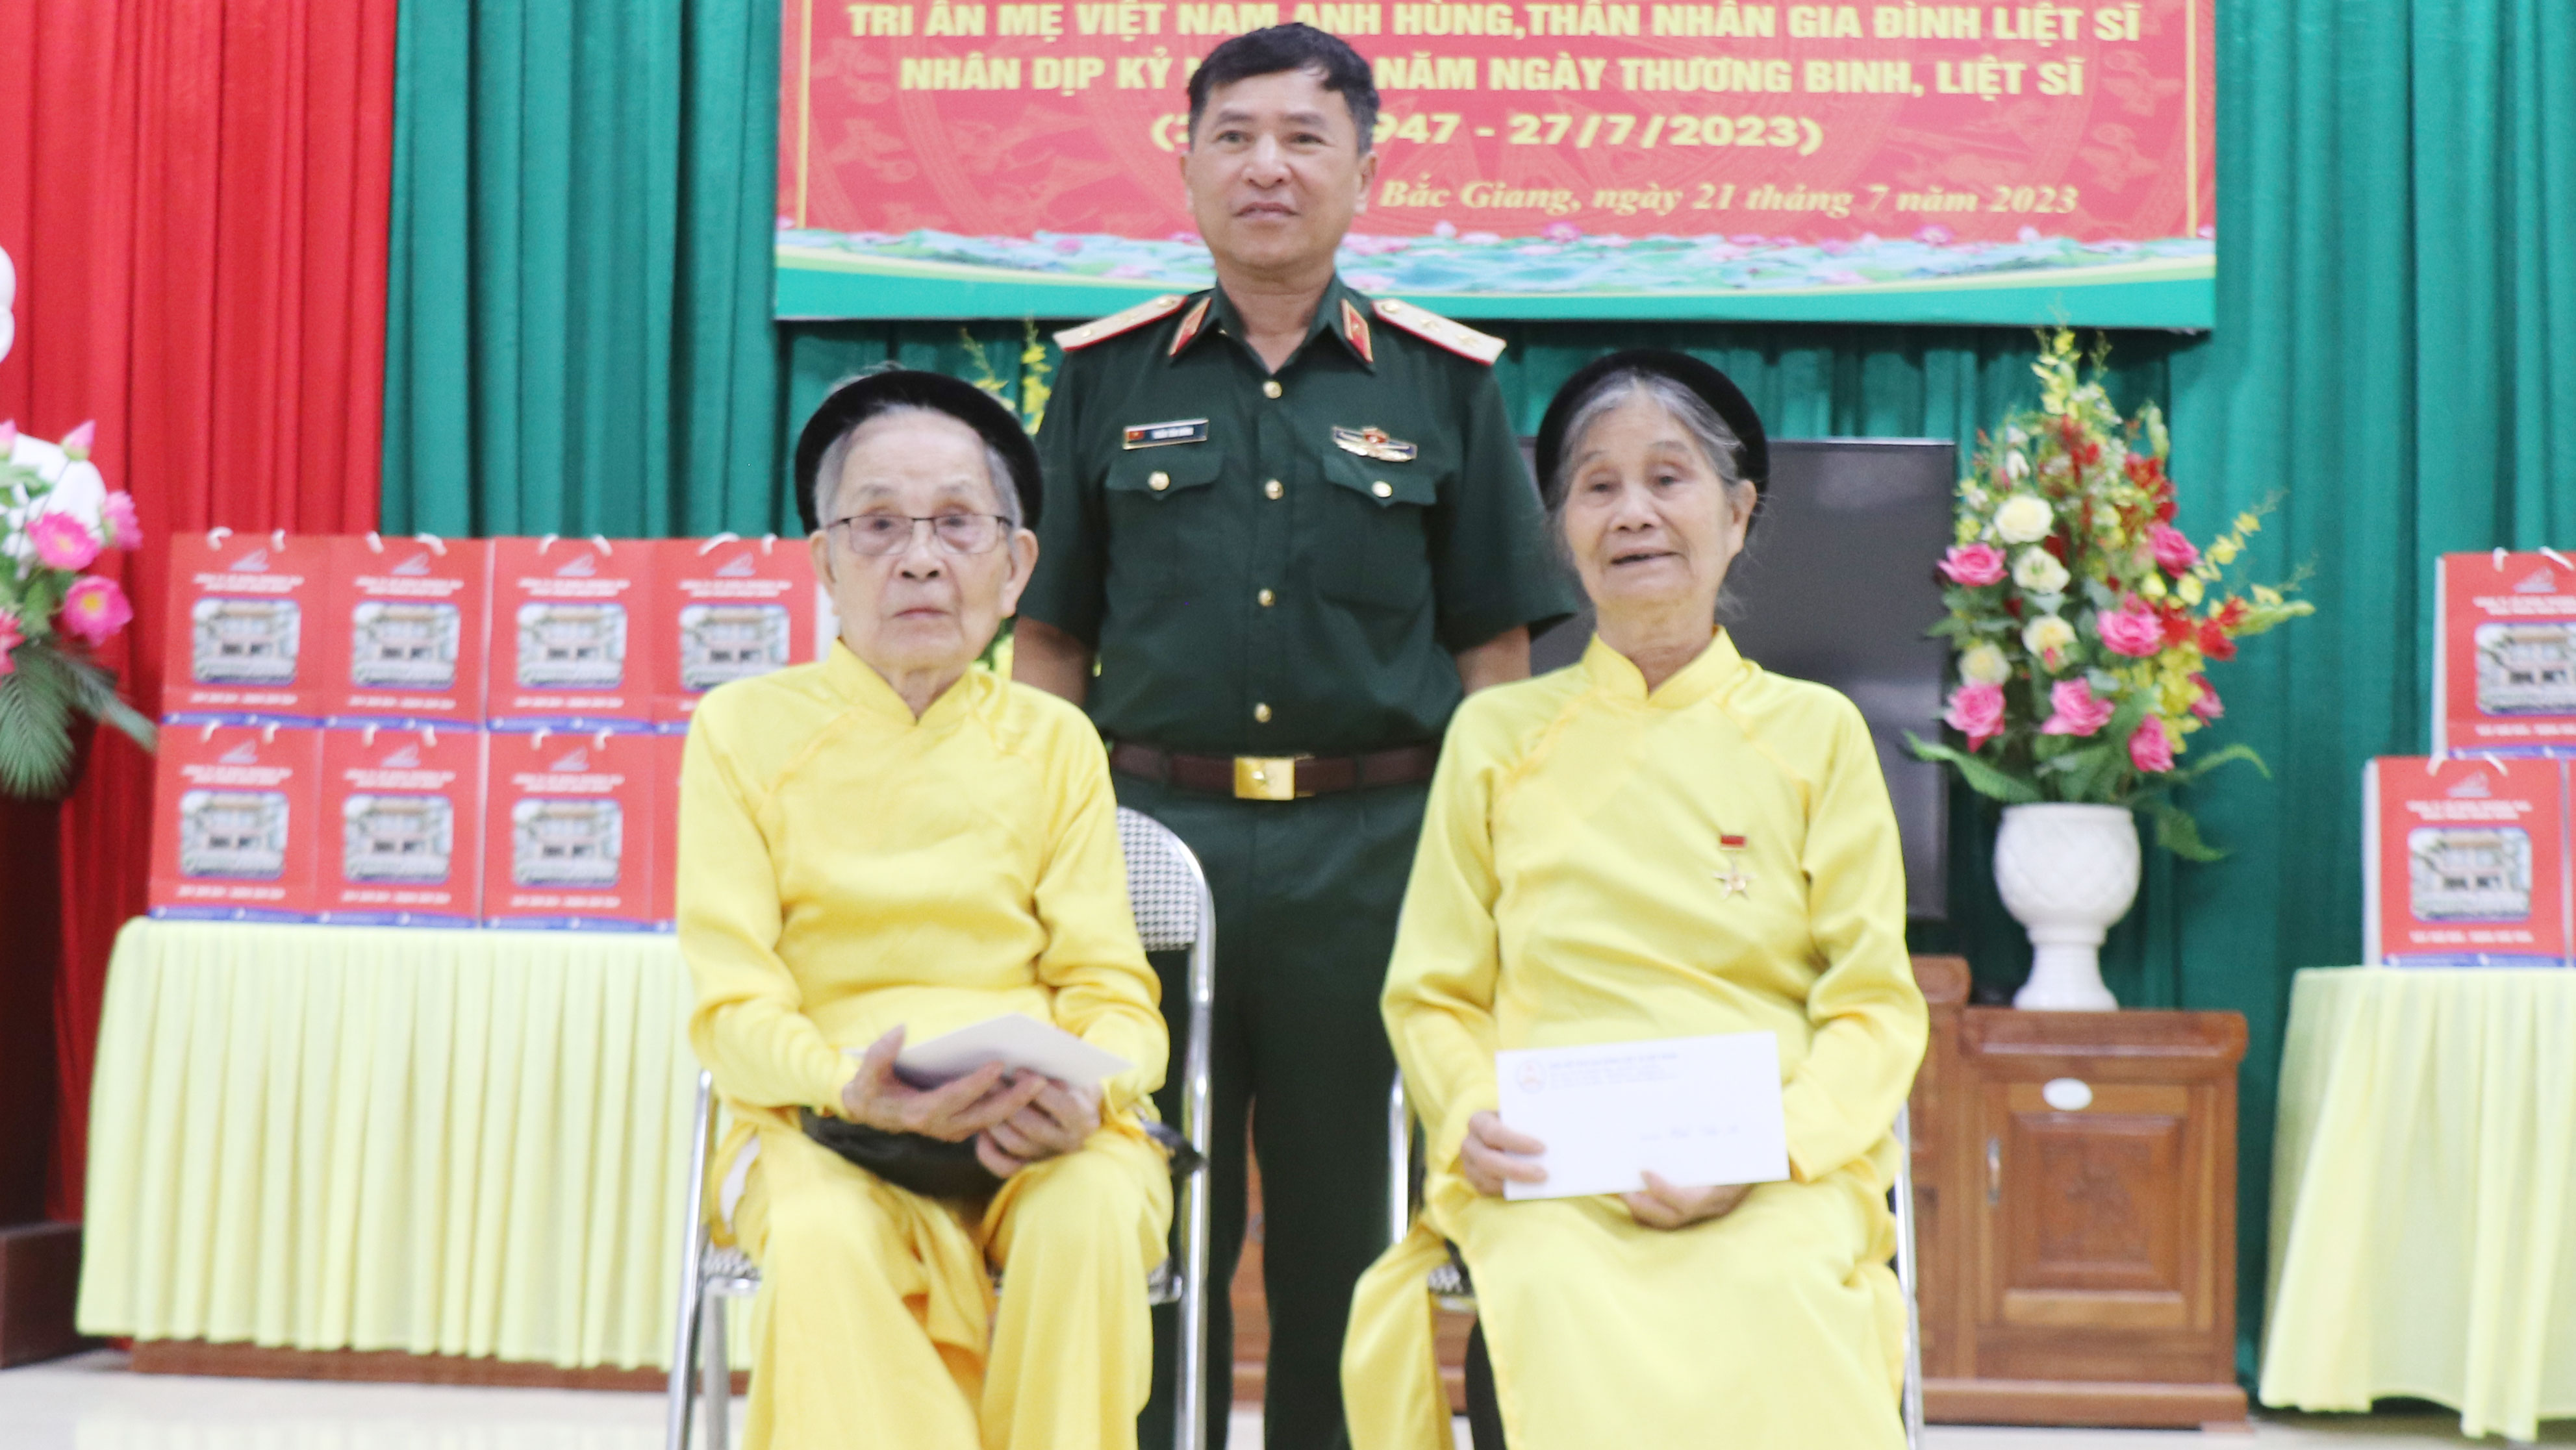 Tri ân Mẹ Việt Nam Anh hùng, thân nhân liệt sĩ tại Bắc Giang